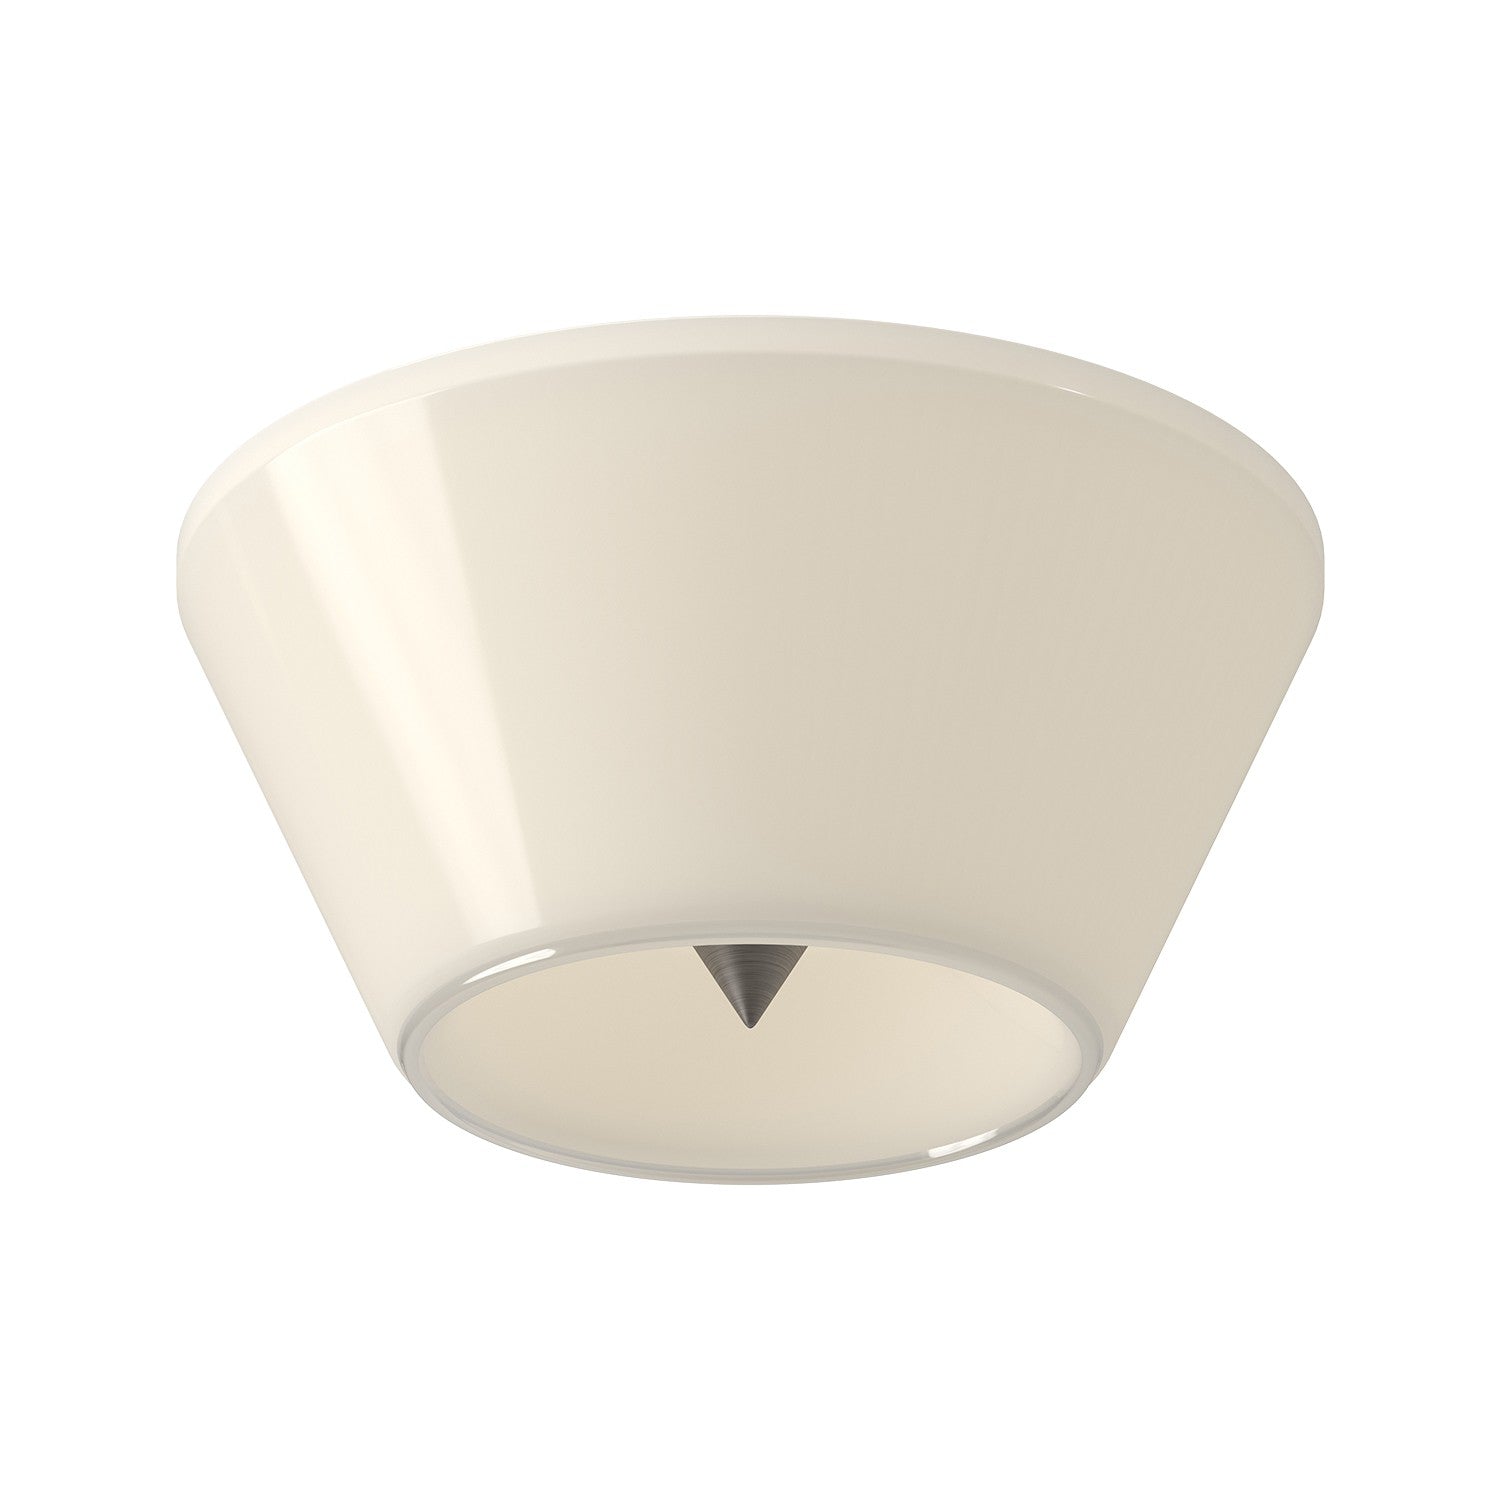 Kuzco Lighting - FM45710-BN/GO - LED Flush Mount - Holt - Brushed Nickel/Glossy Opal Glass